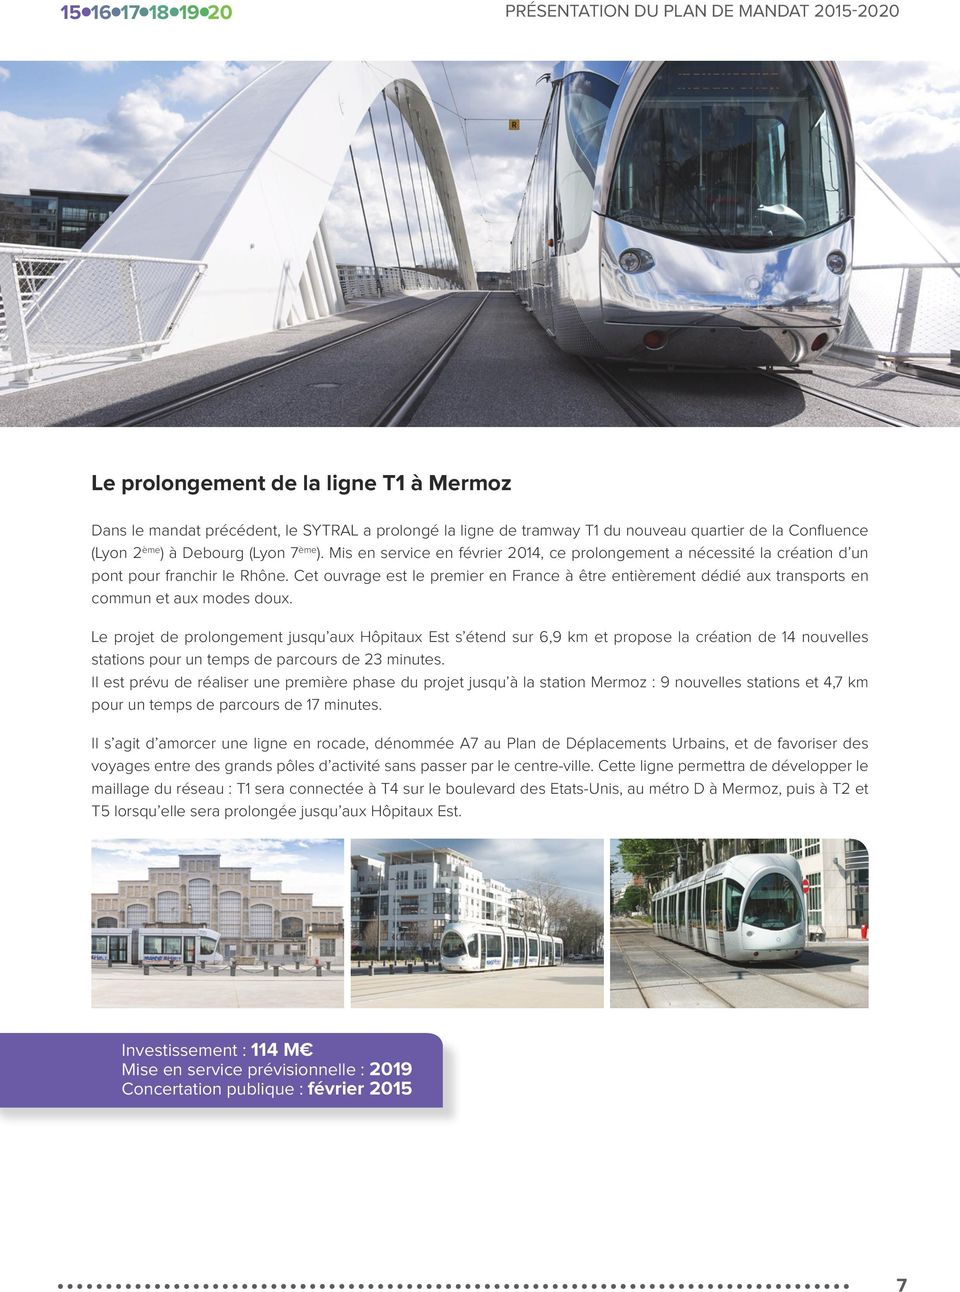 Cet ouvrage est le premier en France à être entièrement dédié aux transports en commun et aux modes doux.